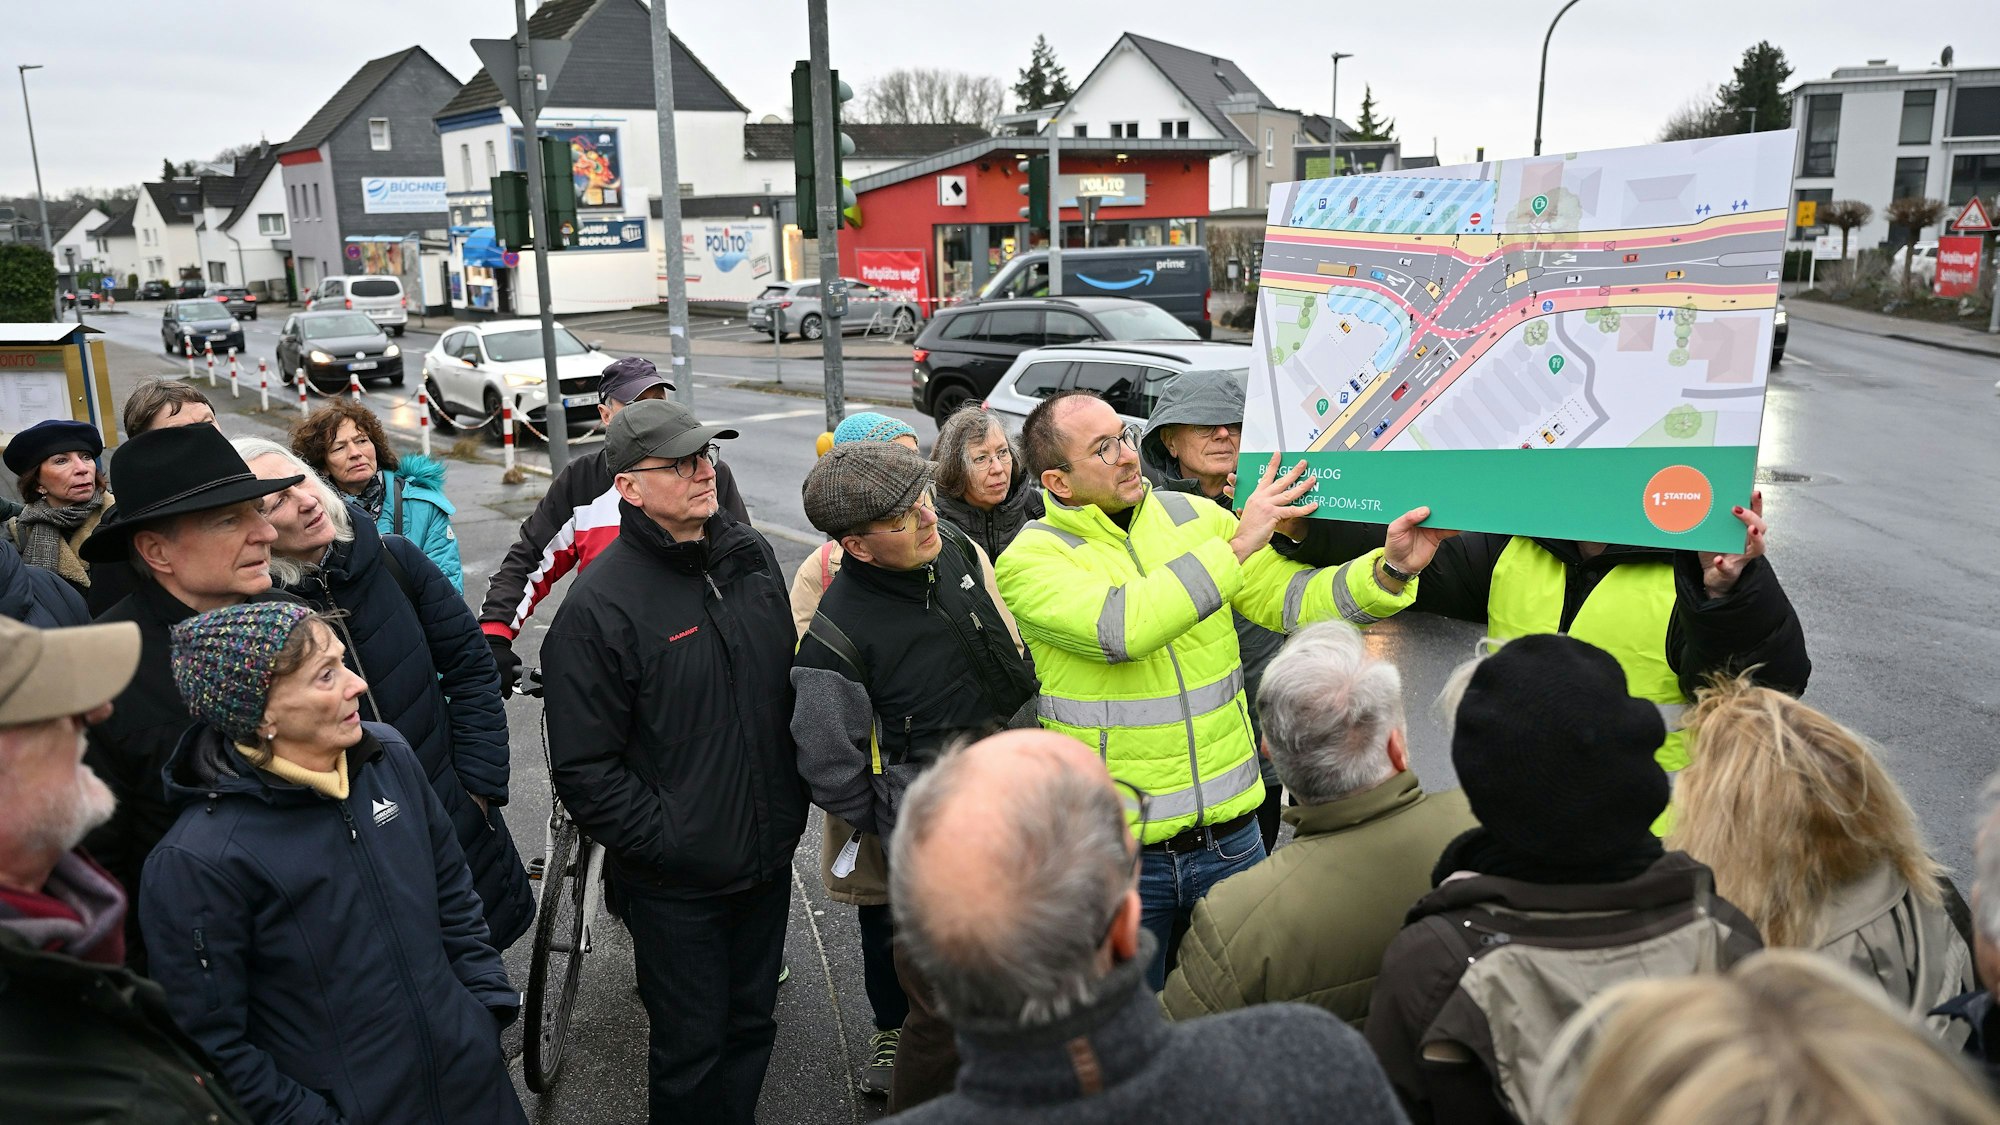 Zwei Planer halten ein Plakat hoch, das die vorgesehene Verkehrsführung zeigt. Um sie herum stehen Teilnehmer der Veranstaltung. Im Hintergrund sieht man die Straßenkreuzung.